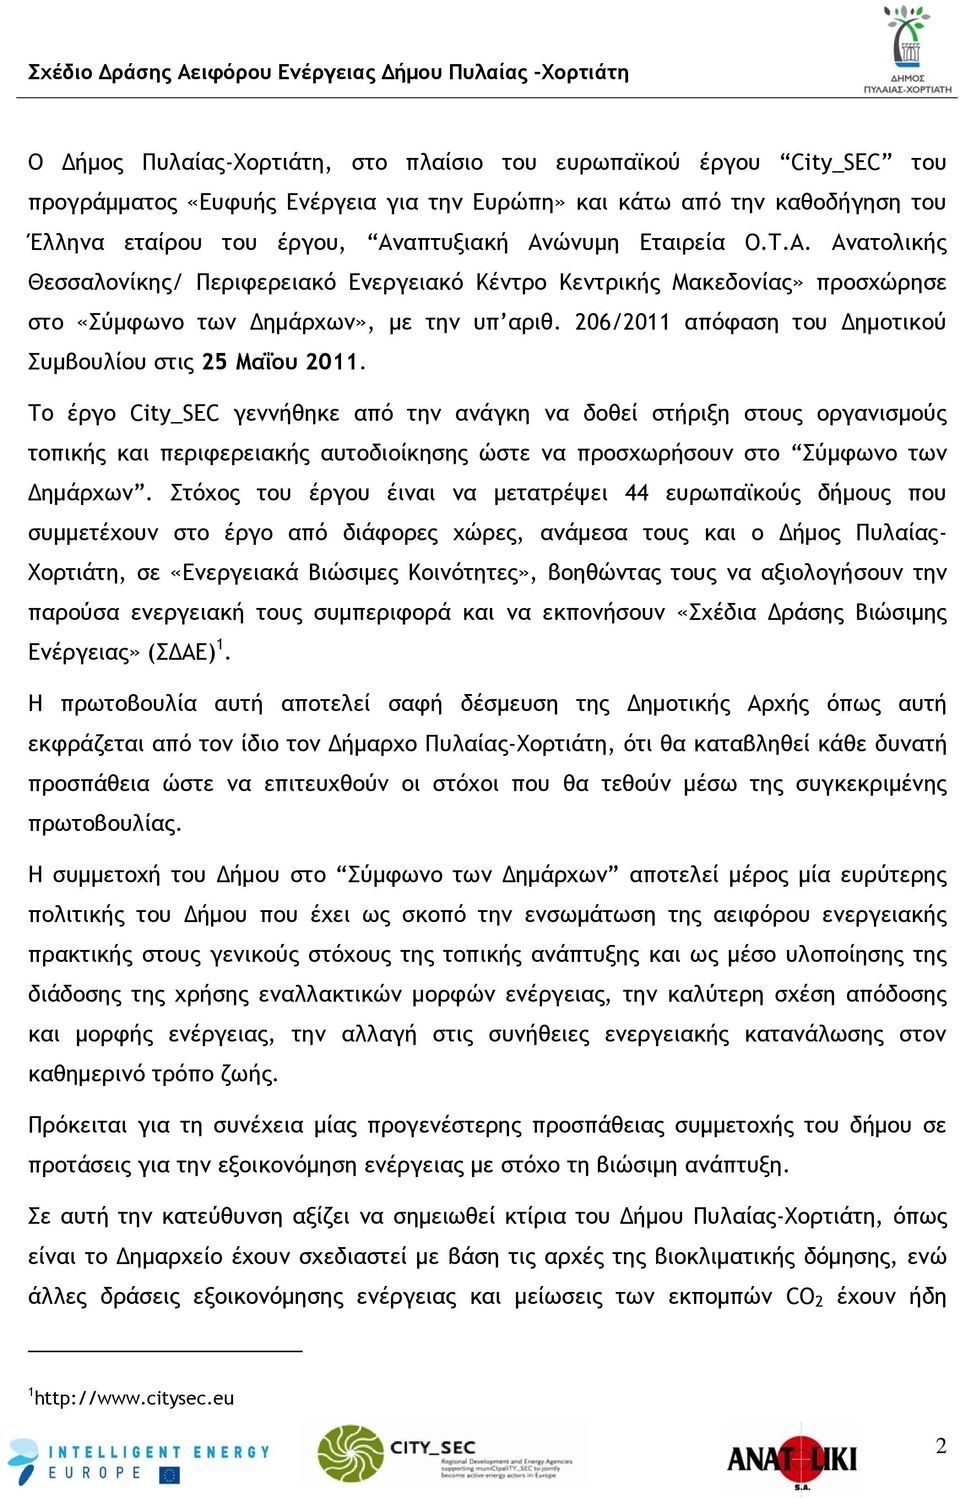 Ανατολικής Θεσσαλονίκης/ Περιφερειακό Ενεργειακό Κέντρο Κεντρικής Μακεδονίας» προσχώρησε στο «Σύμφωνο των Δημάρχων», με την υπ αριθ. 206/2011 απόφαση του Δημοτικού Συμβουλίου στις 25 Μαΐου 2011.